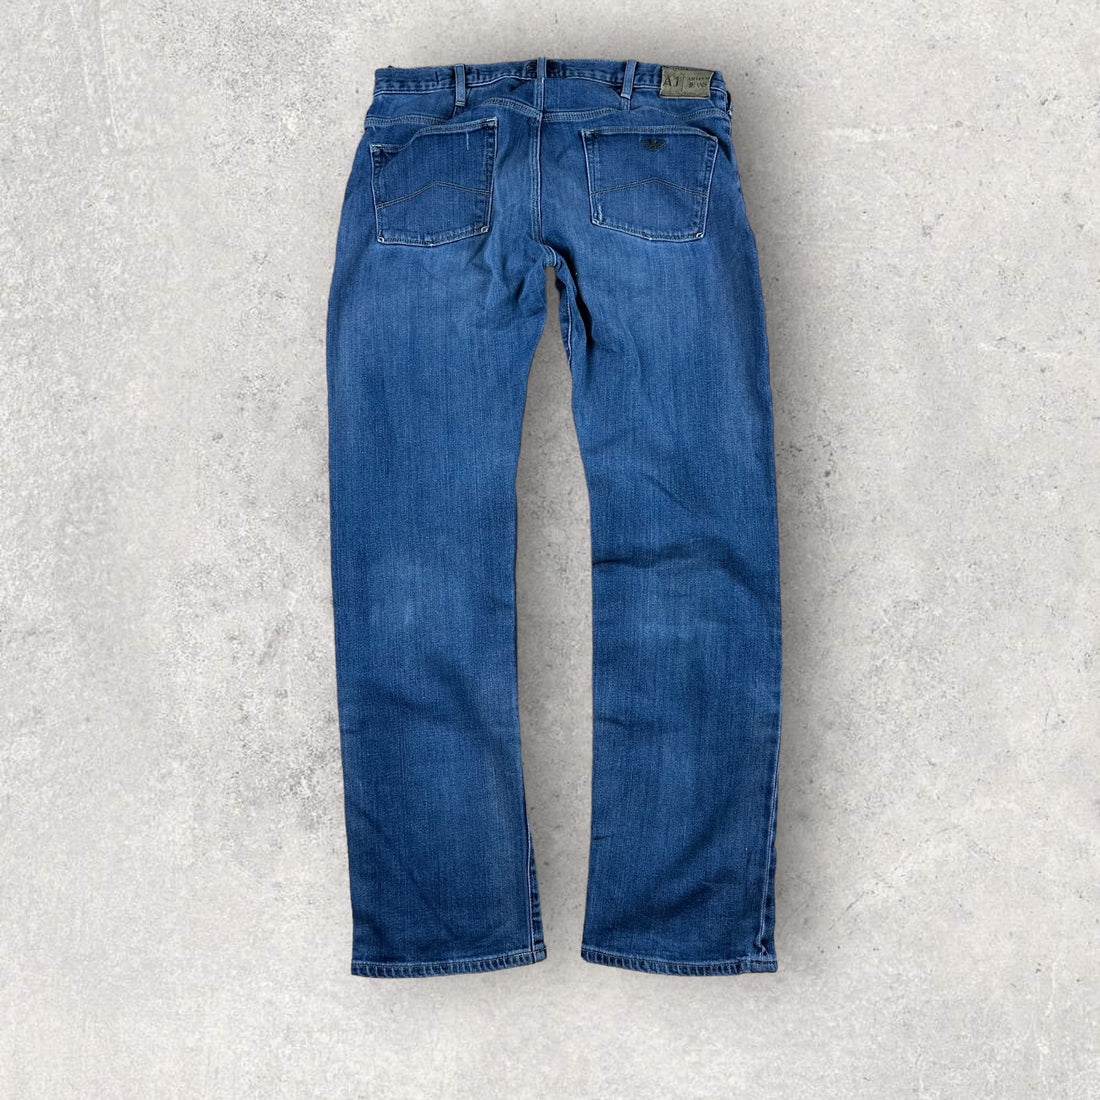 Vintage Armani Jeans (34/34)